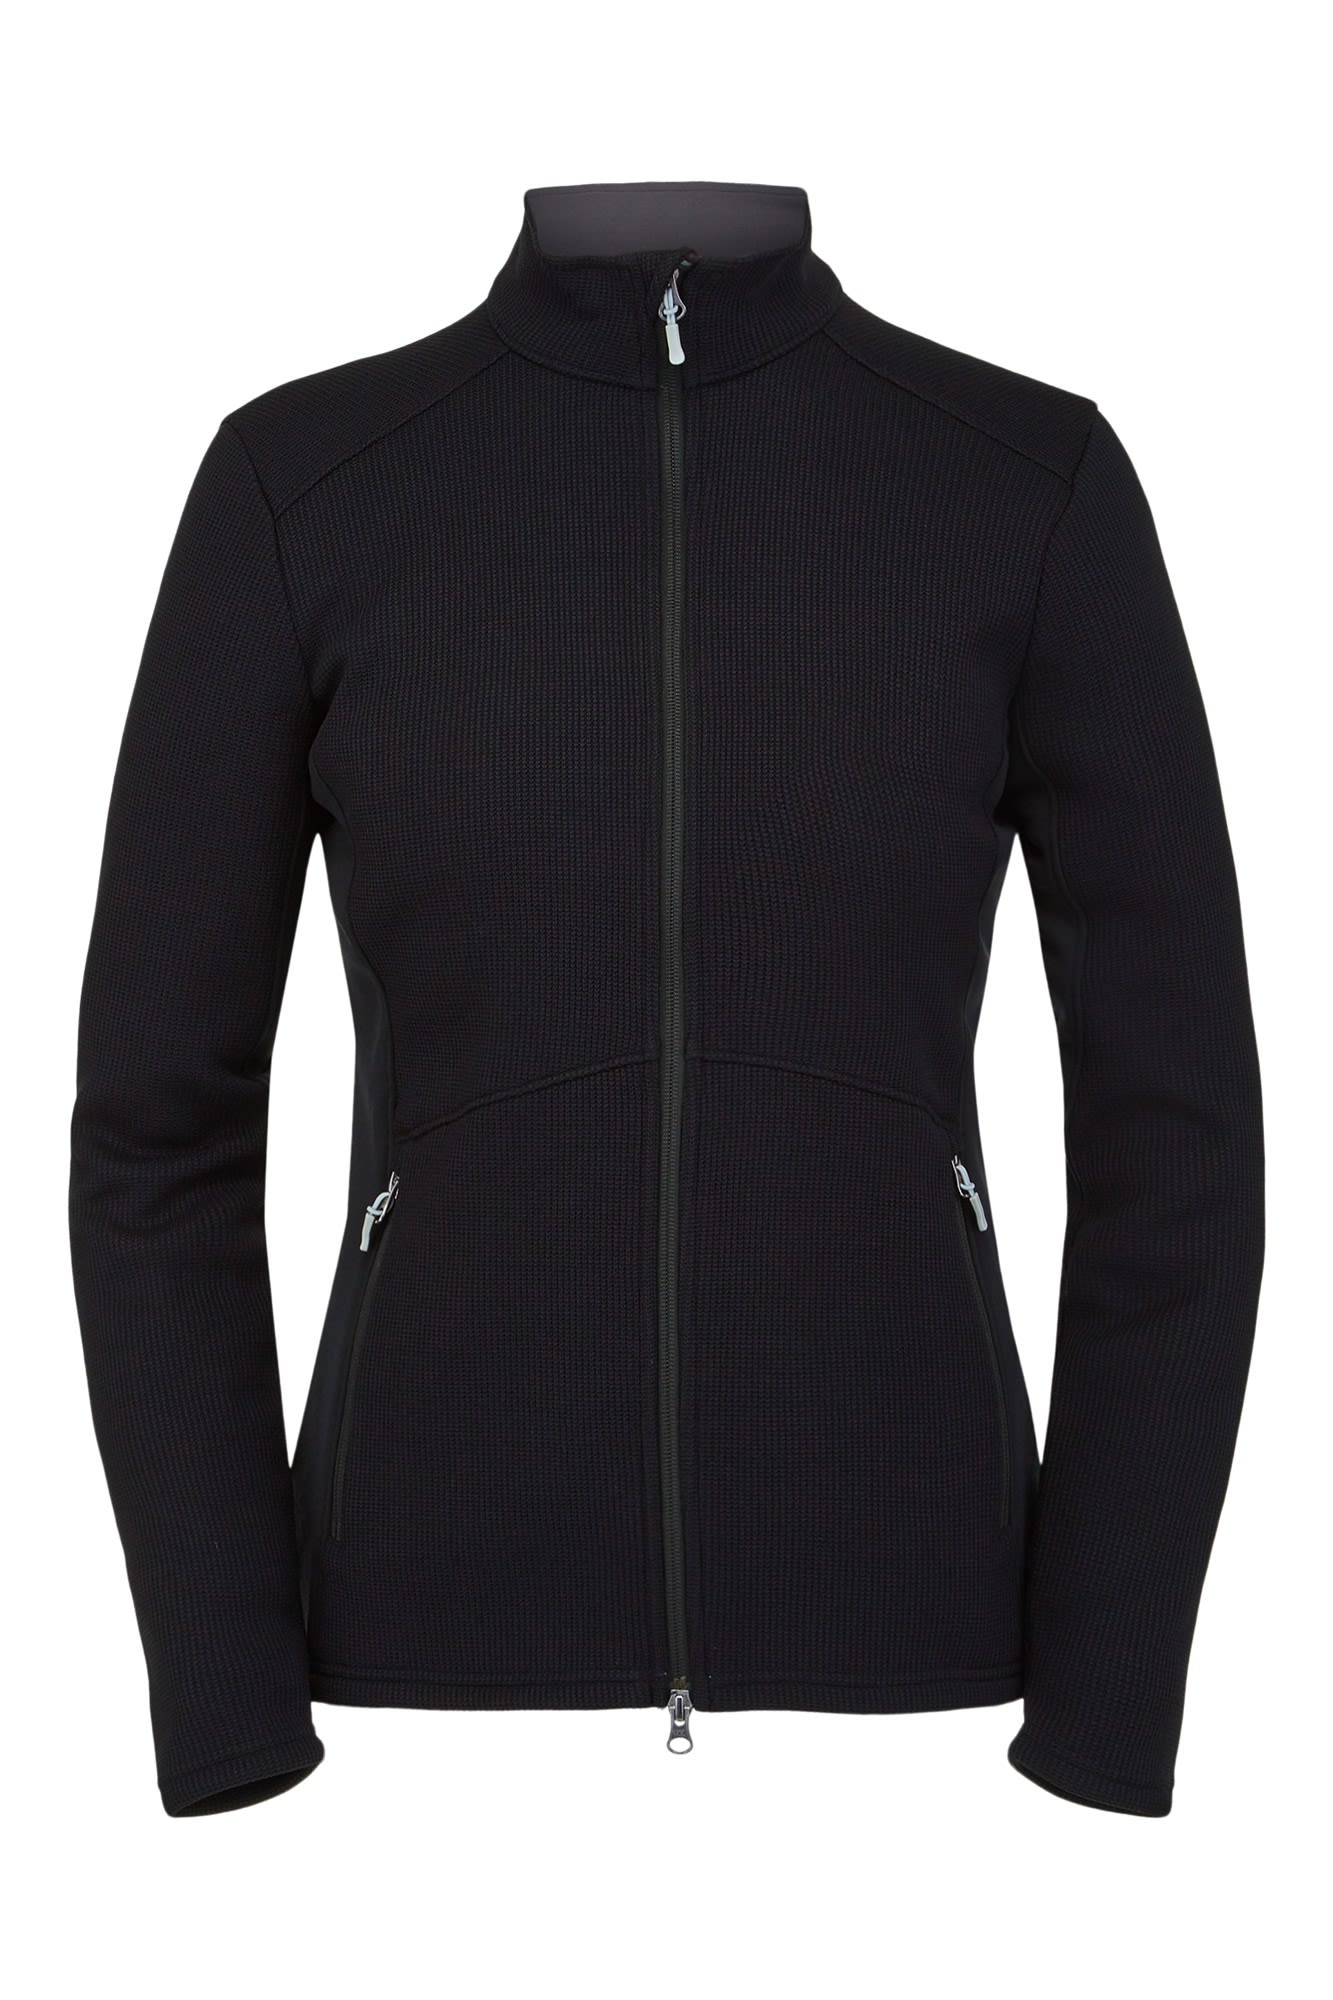 Spyder Bandita Full Zip Schwarz- Female Fleece- und Powerstretch-Pullover- Grsse L - Farbe Black